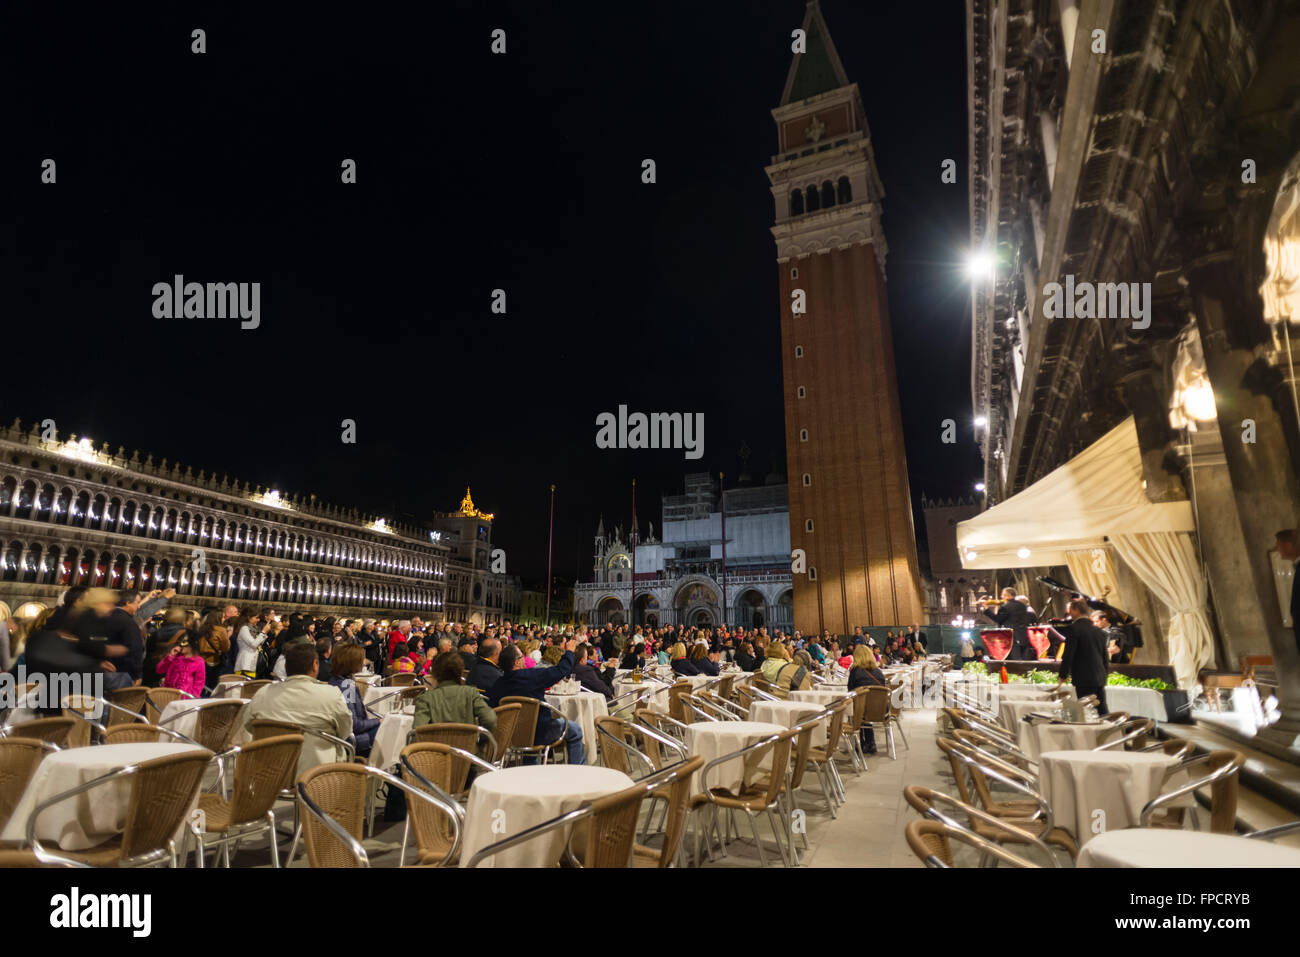 Les gens l'écoute d'un petit orchestre à l'occasion d'une soirée concert au café 'Caffe Florian' sur la place Saint Marc à Venise Banque D'Images